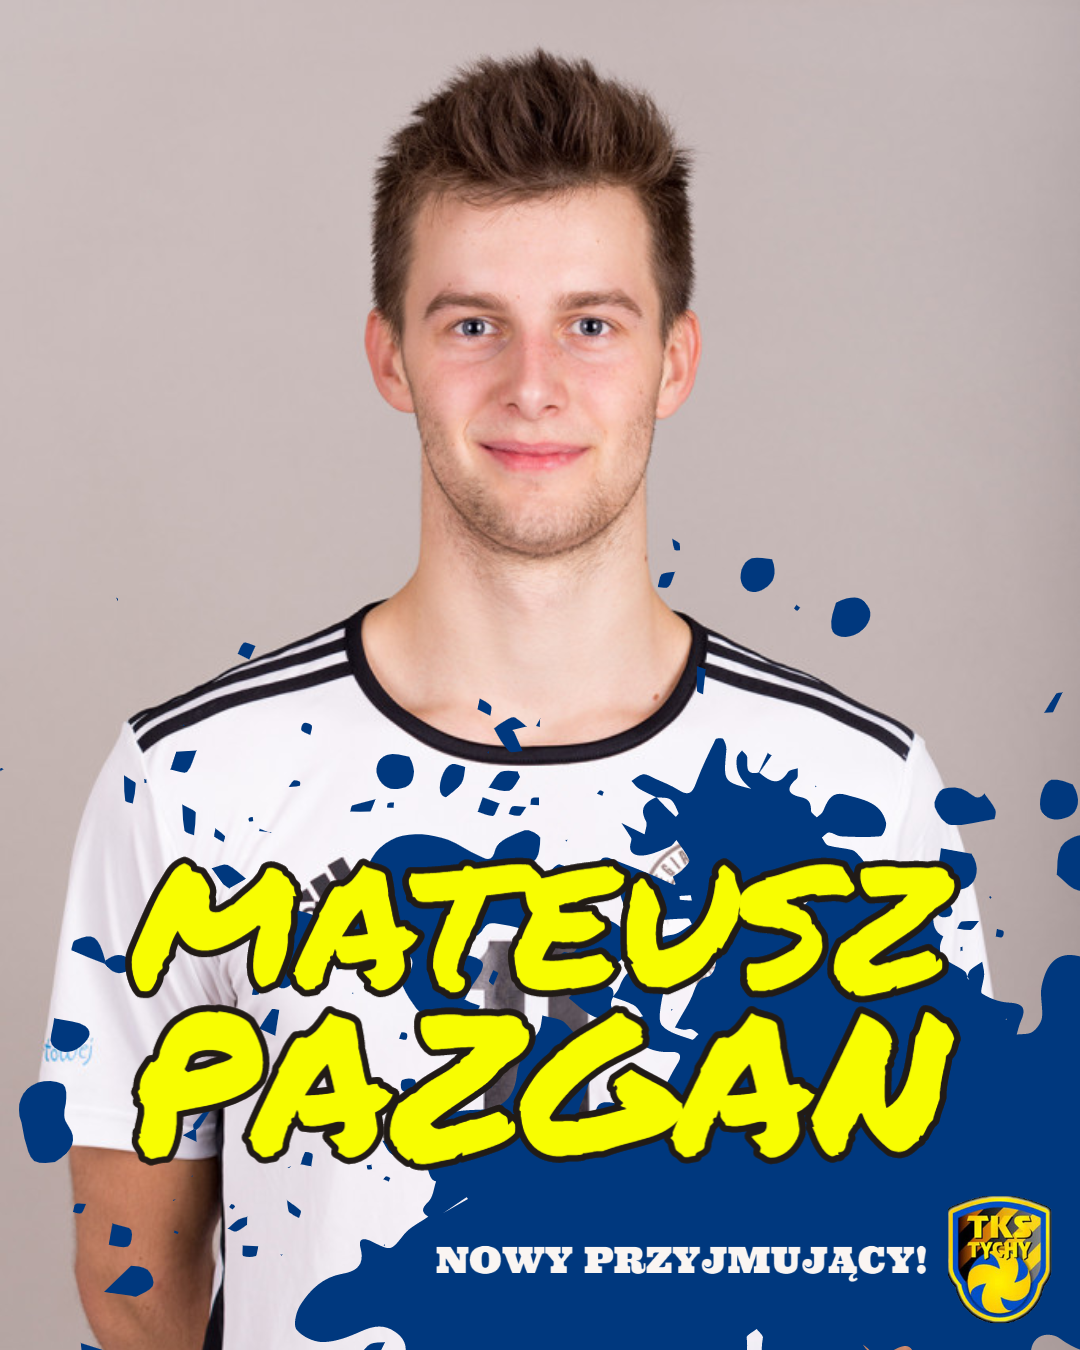  Mateusz Pazgan - nowy przyjmujący! 😁🤙